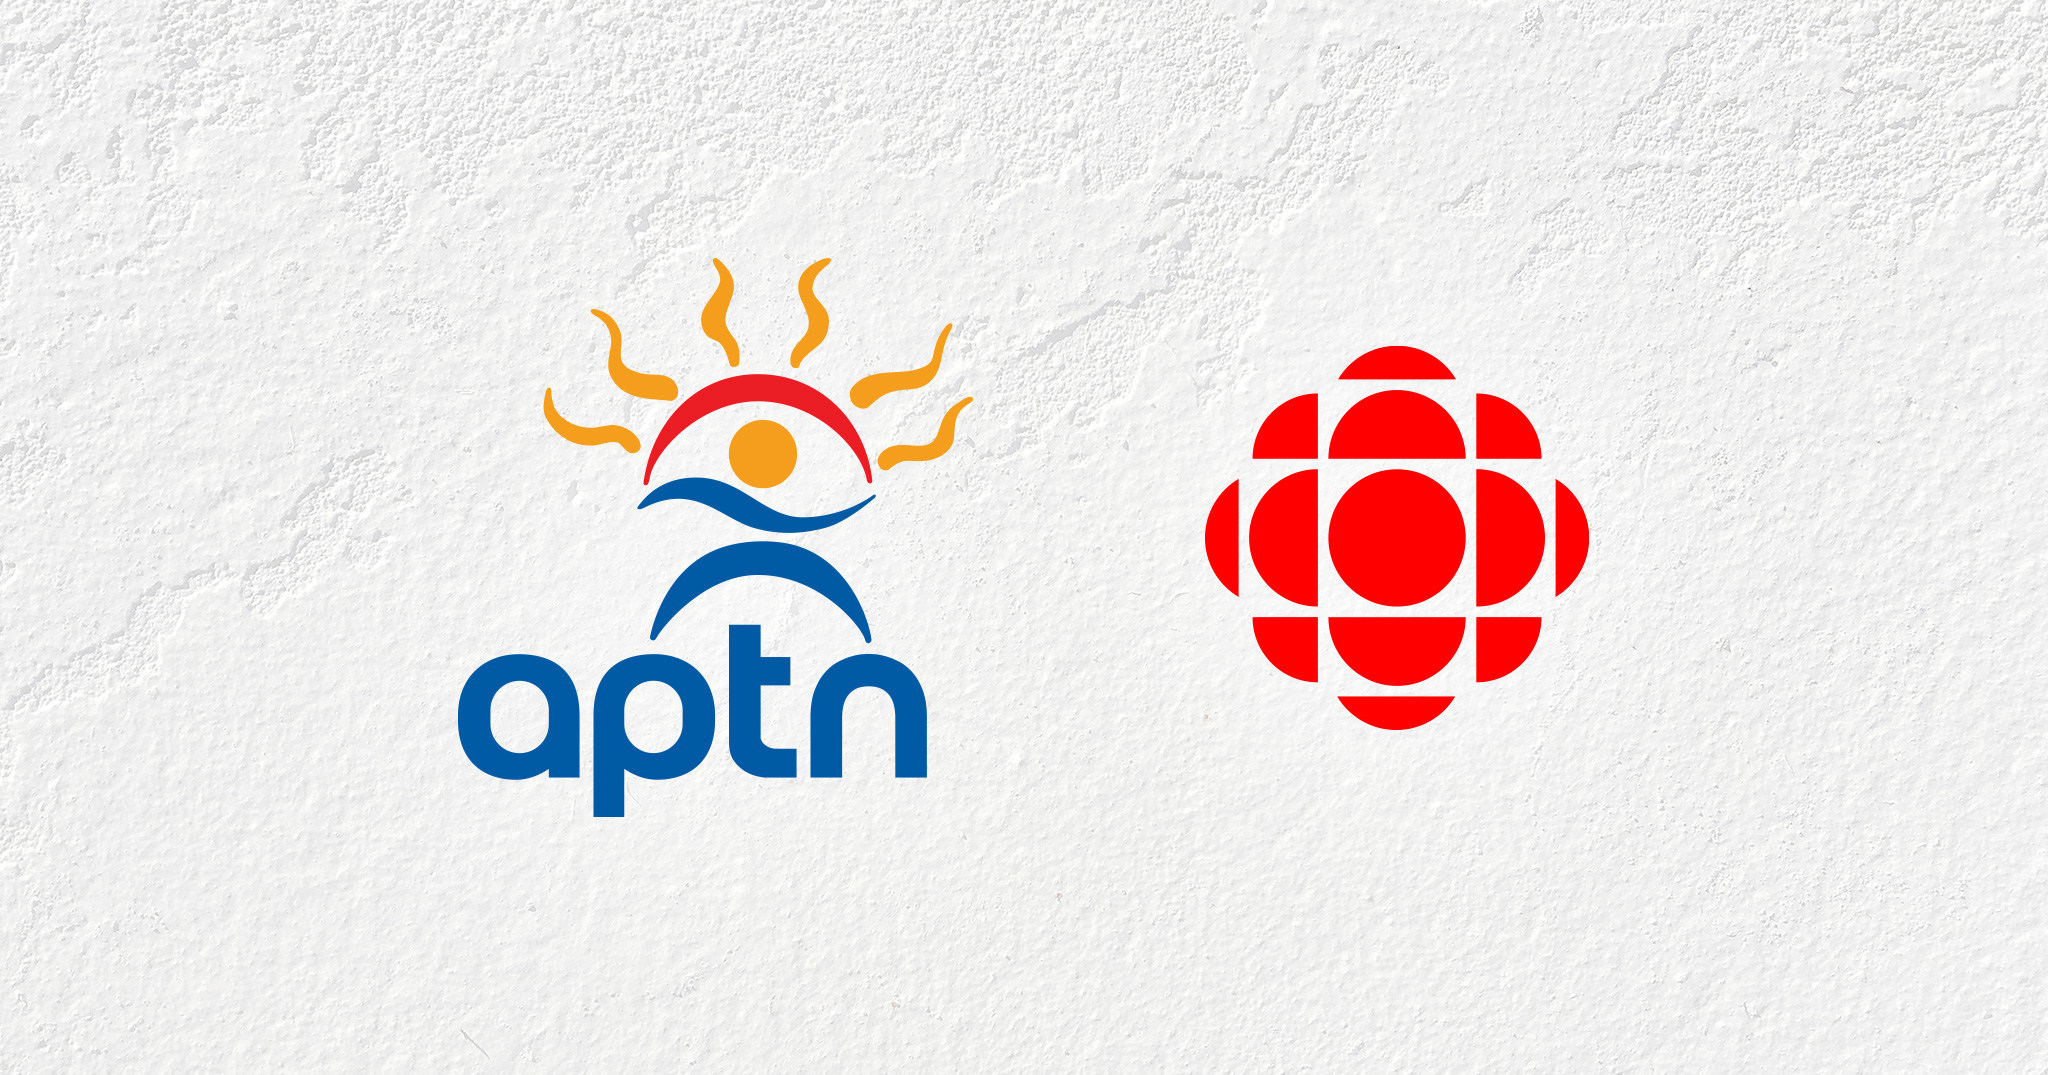 APTN - CBC/Radio-Canada logos